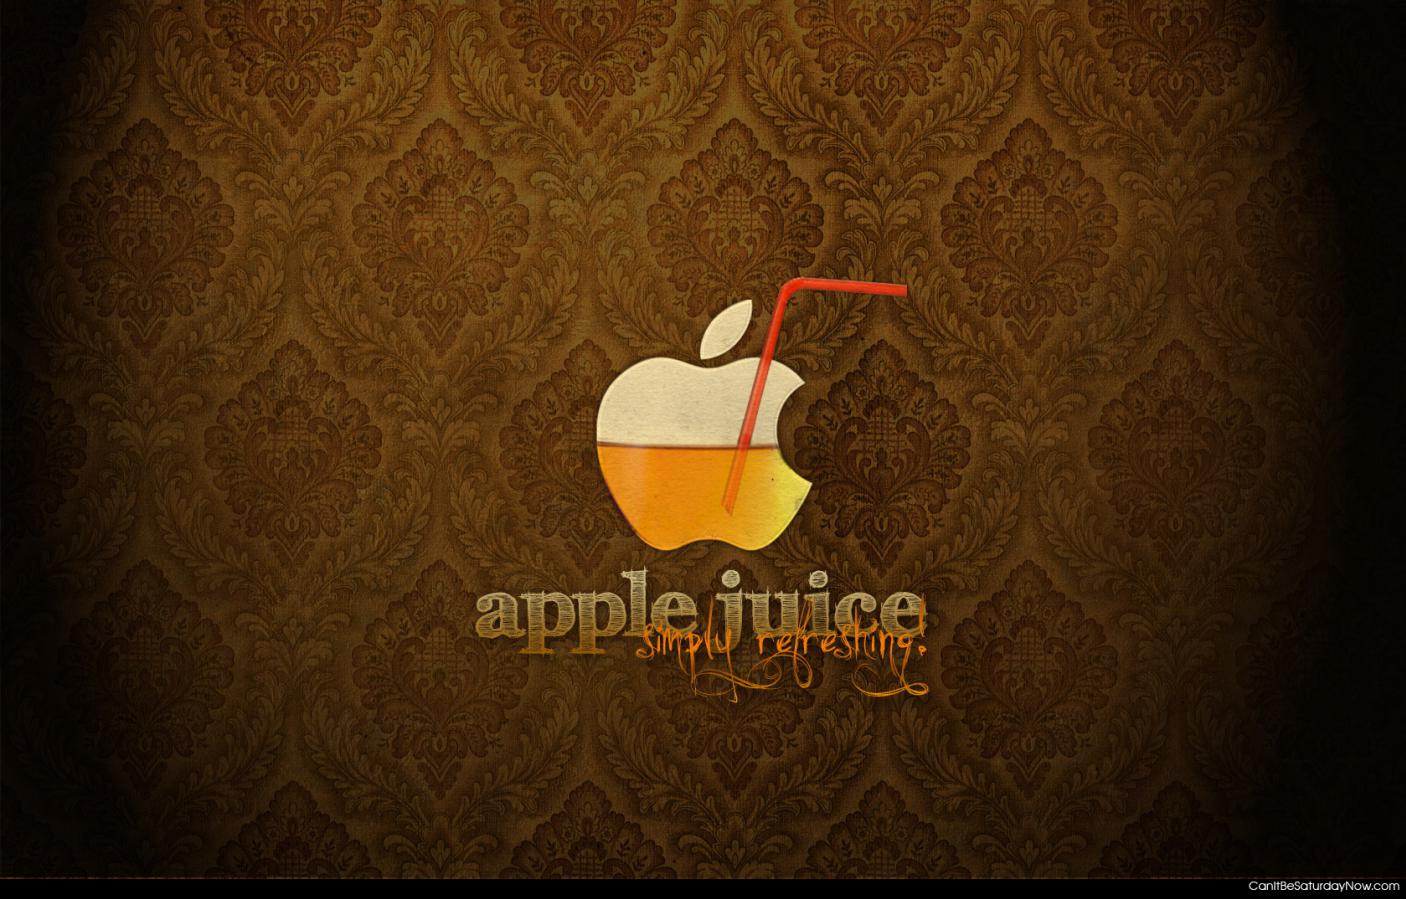 Apple juice - tasty juice